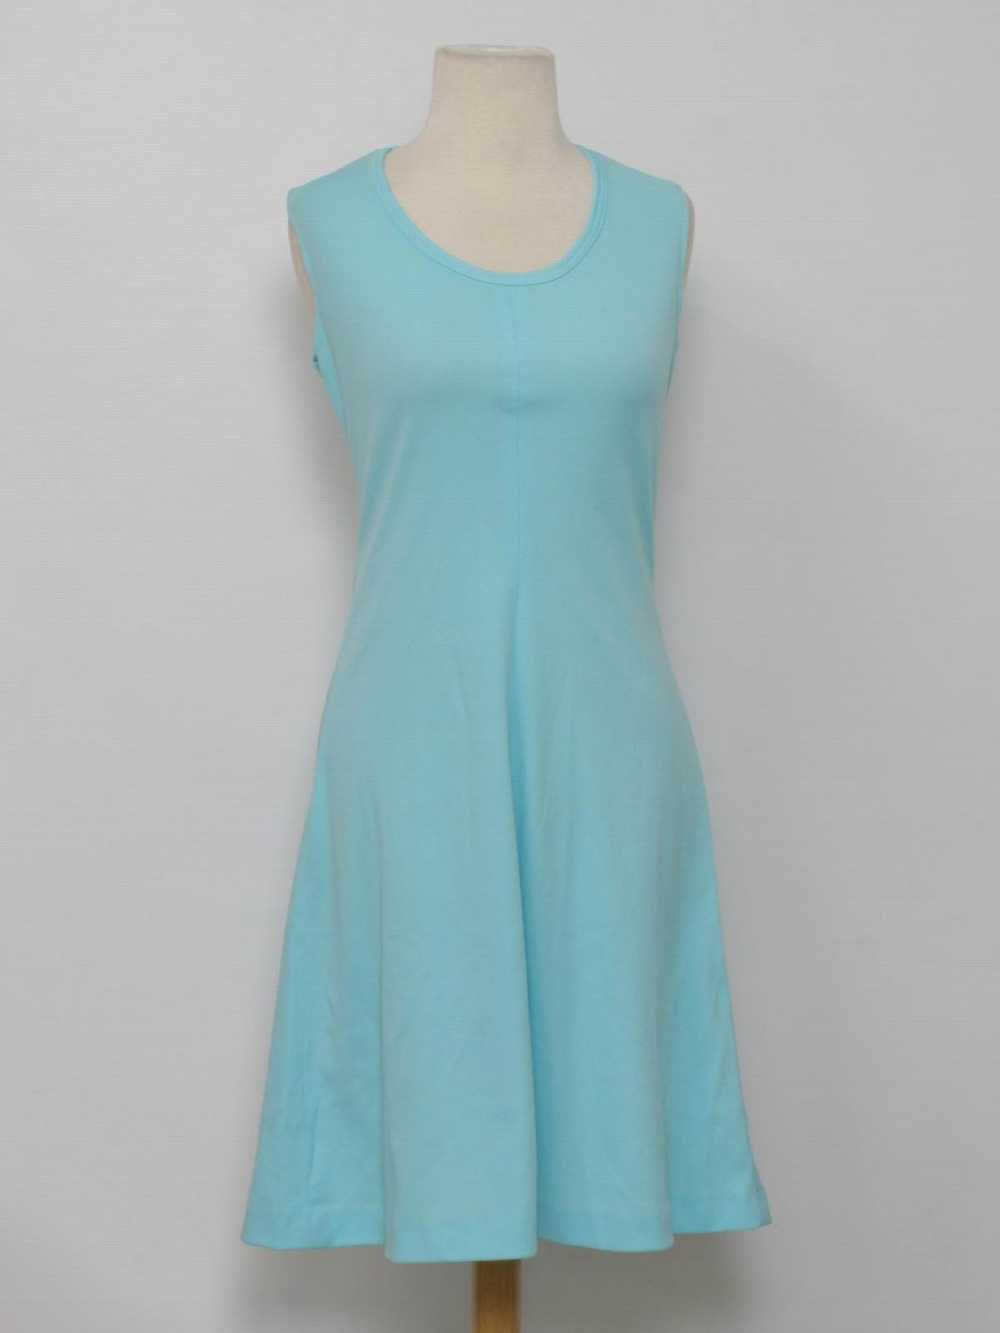 1970's Knit Dress - image 3